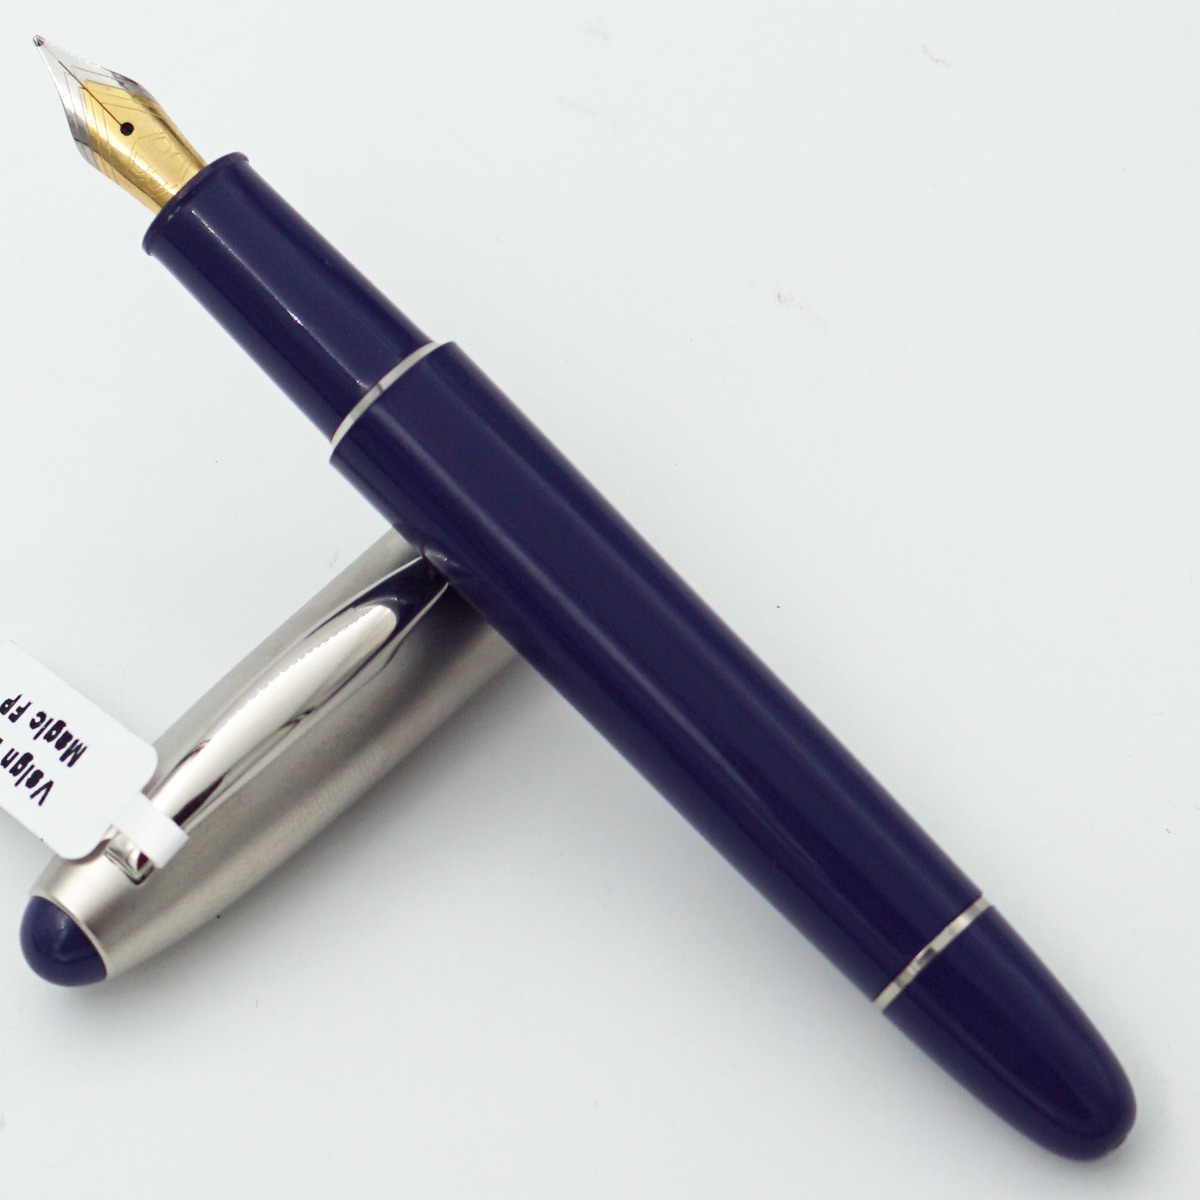 Vsign Beena Magic Blue Color Body With Silver Clip Medium Nib Converter Type Fountain Pen SKU 24465